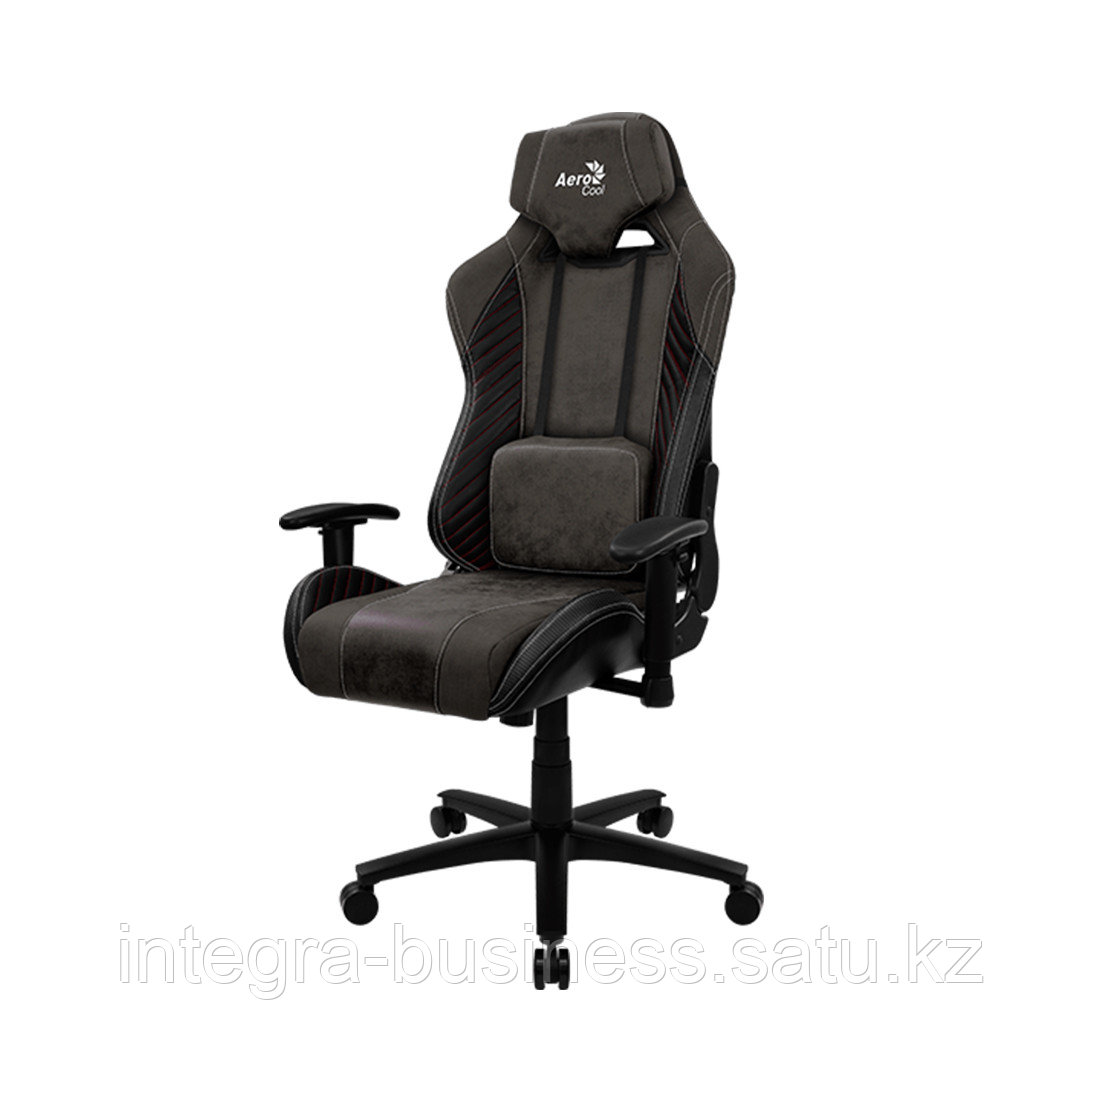 Игровое компьютерное кресло Aerocool BARON Iron Black, фото 1